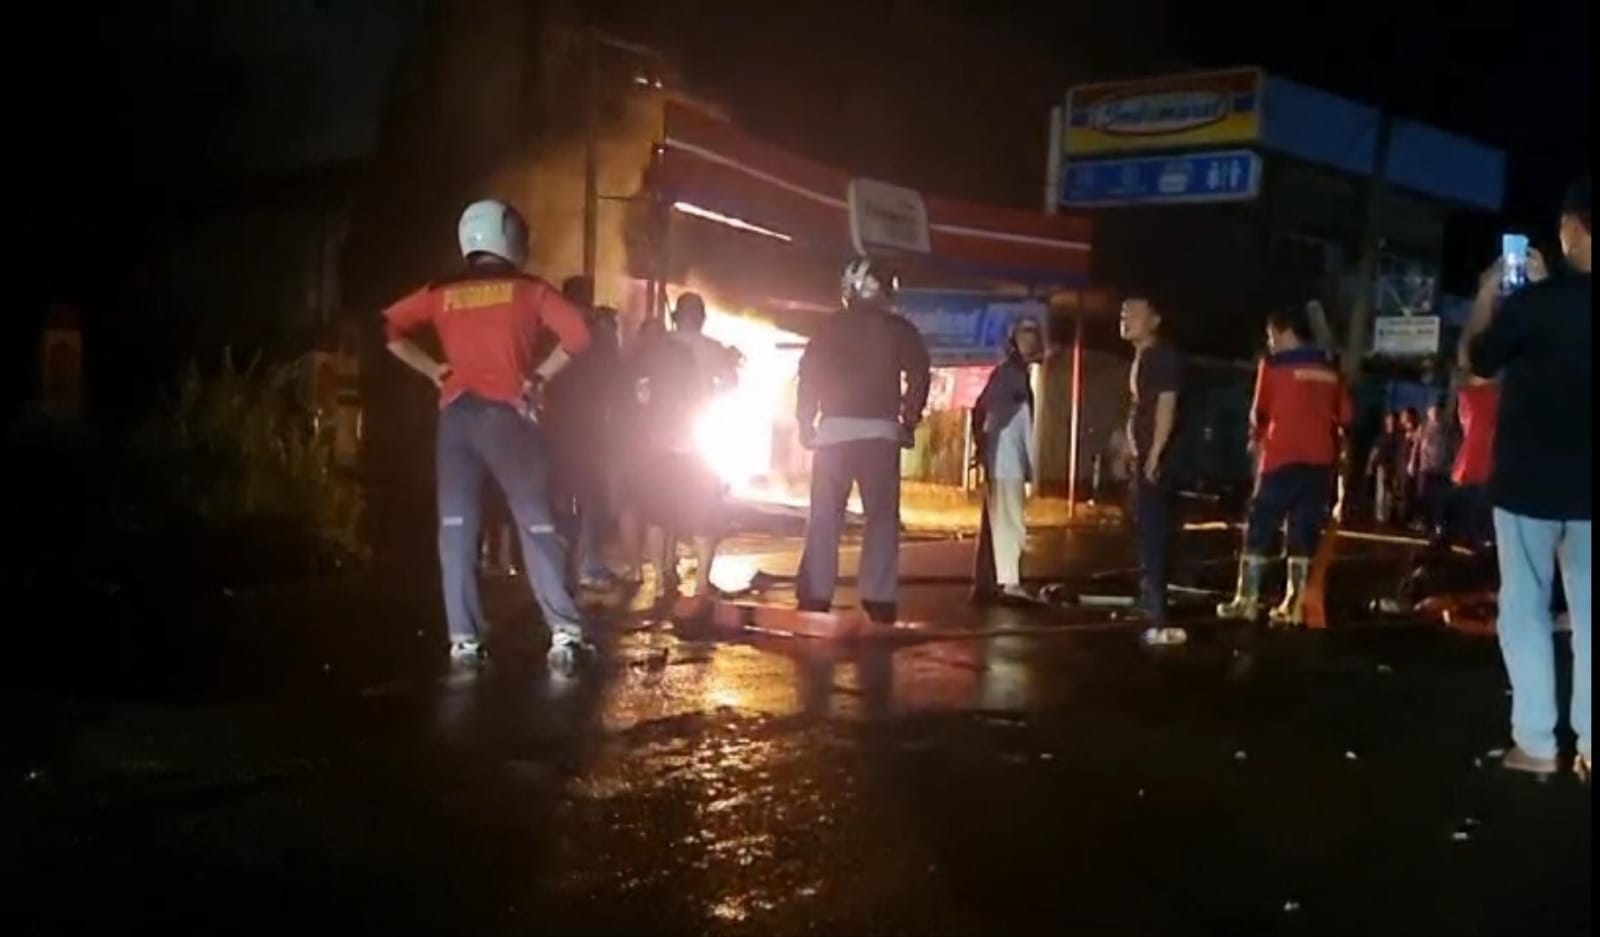 Toko Sparepart Motor di Bengkulu Selatan Ludes Terbakar, Pemilik Rugi Miliaran